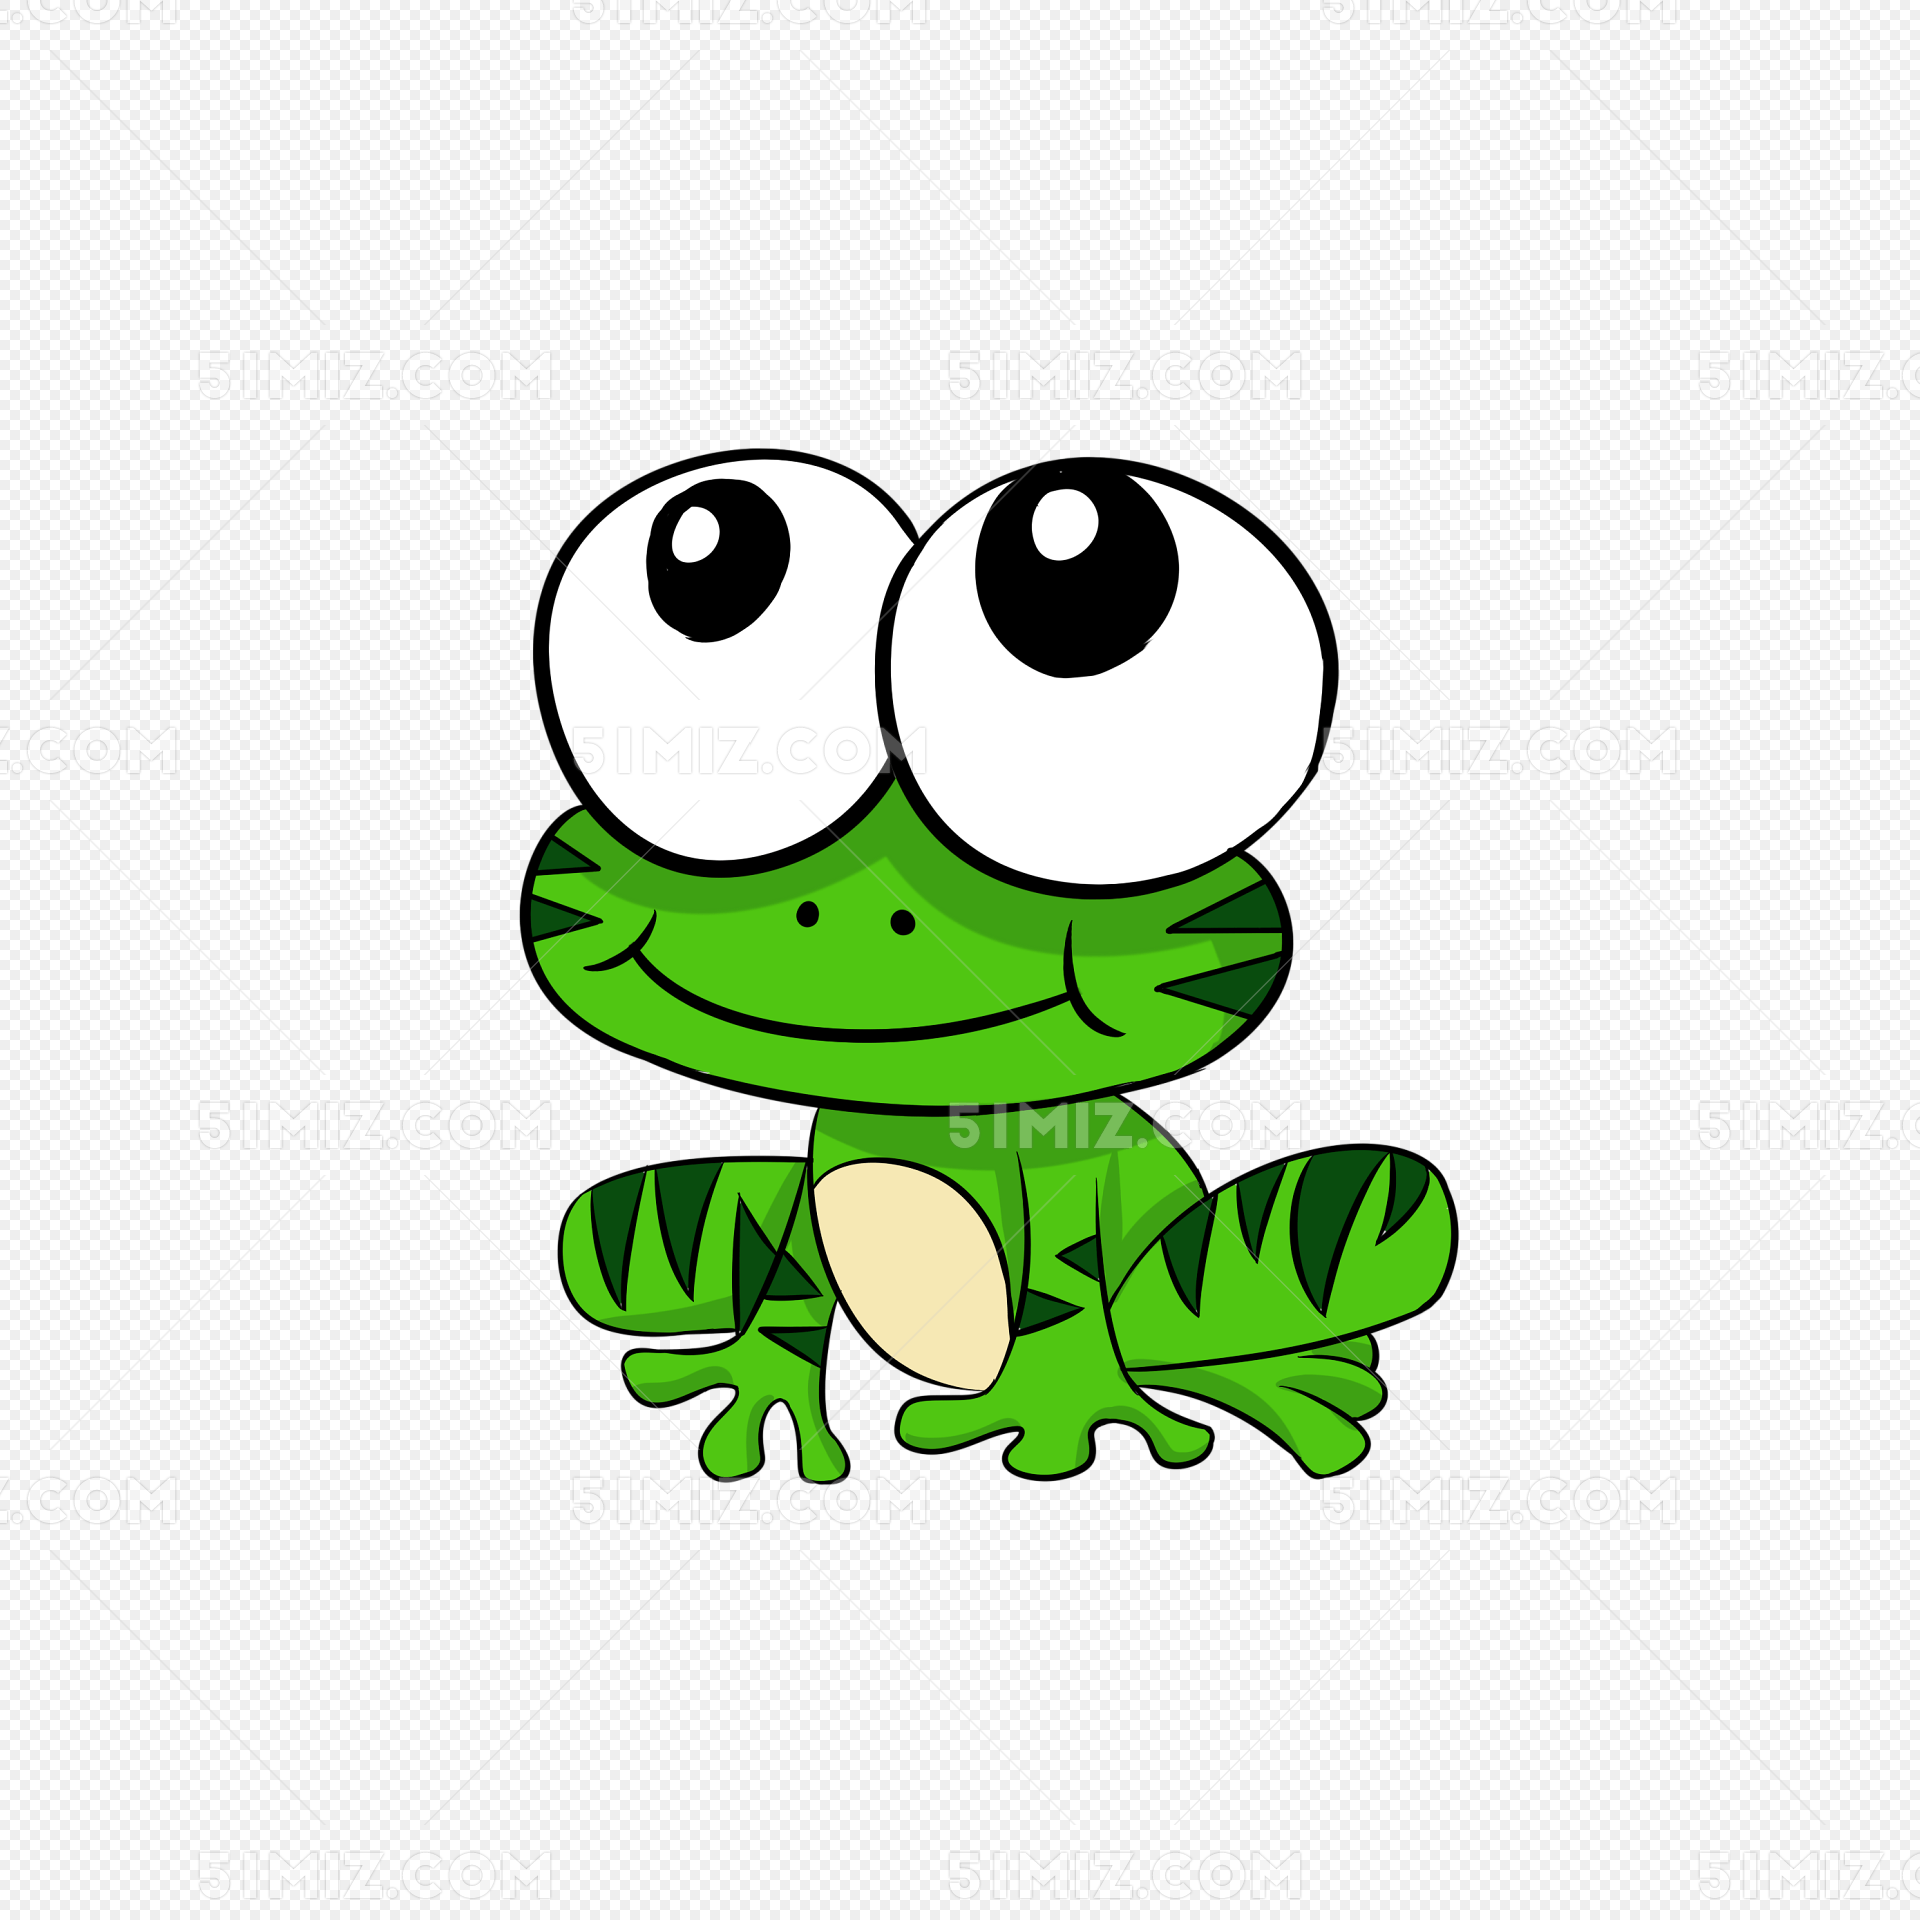 下载png下载psd png素材 可爱小动物青蛙标签:可爱小动物 卡通青蛙